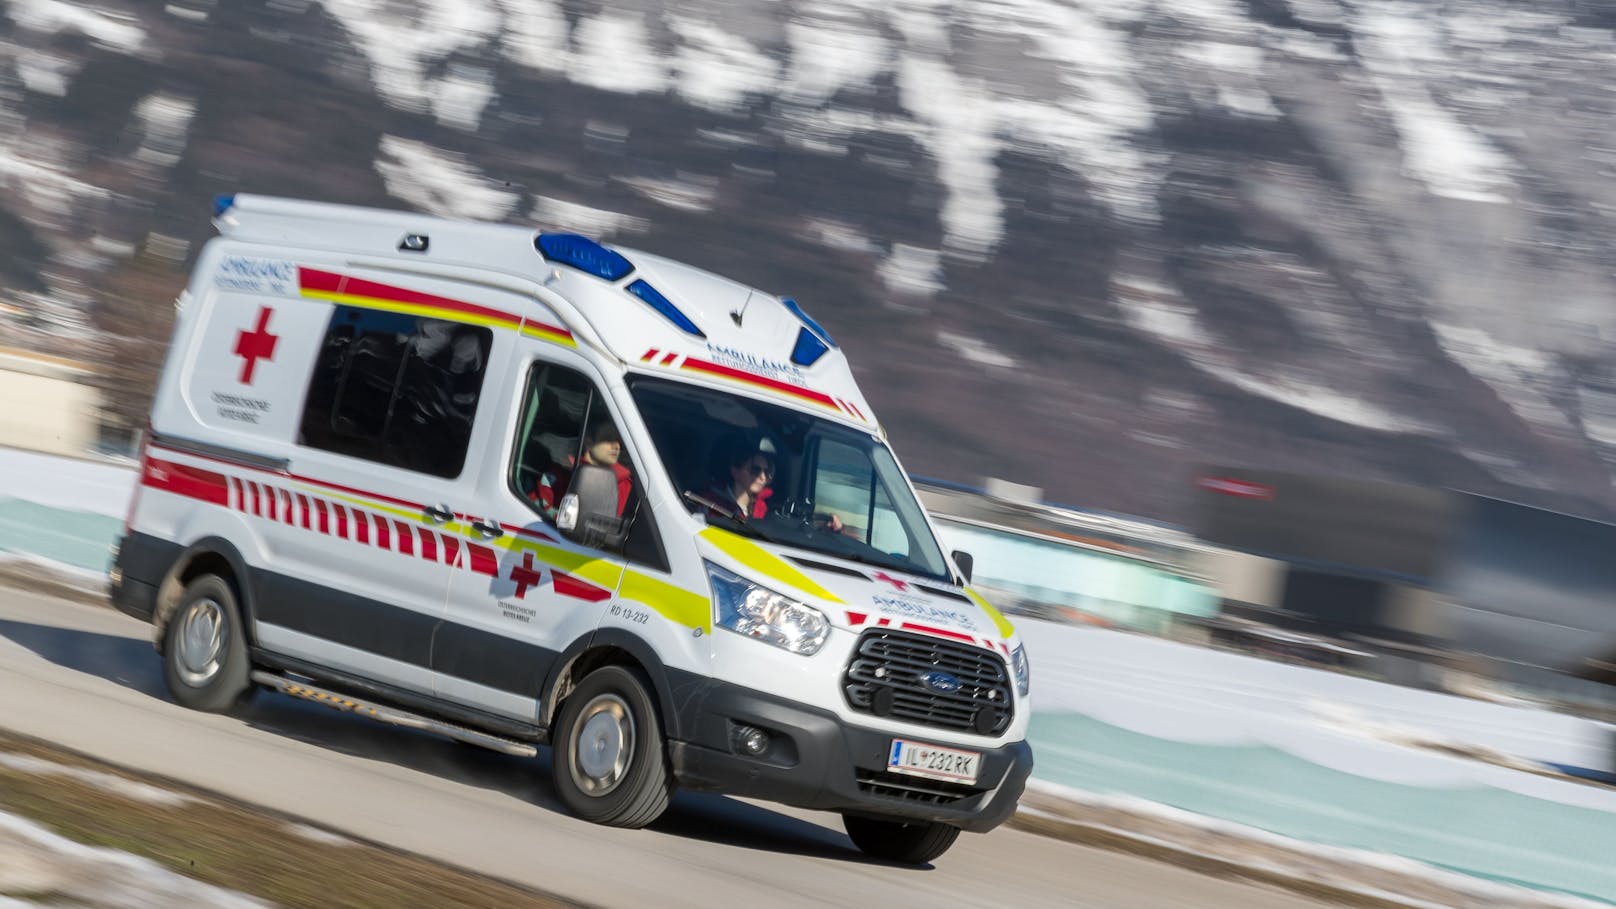 Straße in Tirol nach schwerem Auto-Unfall gesperrt